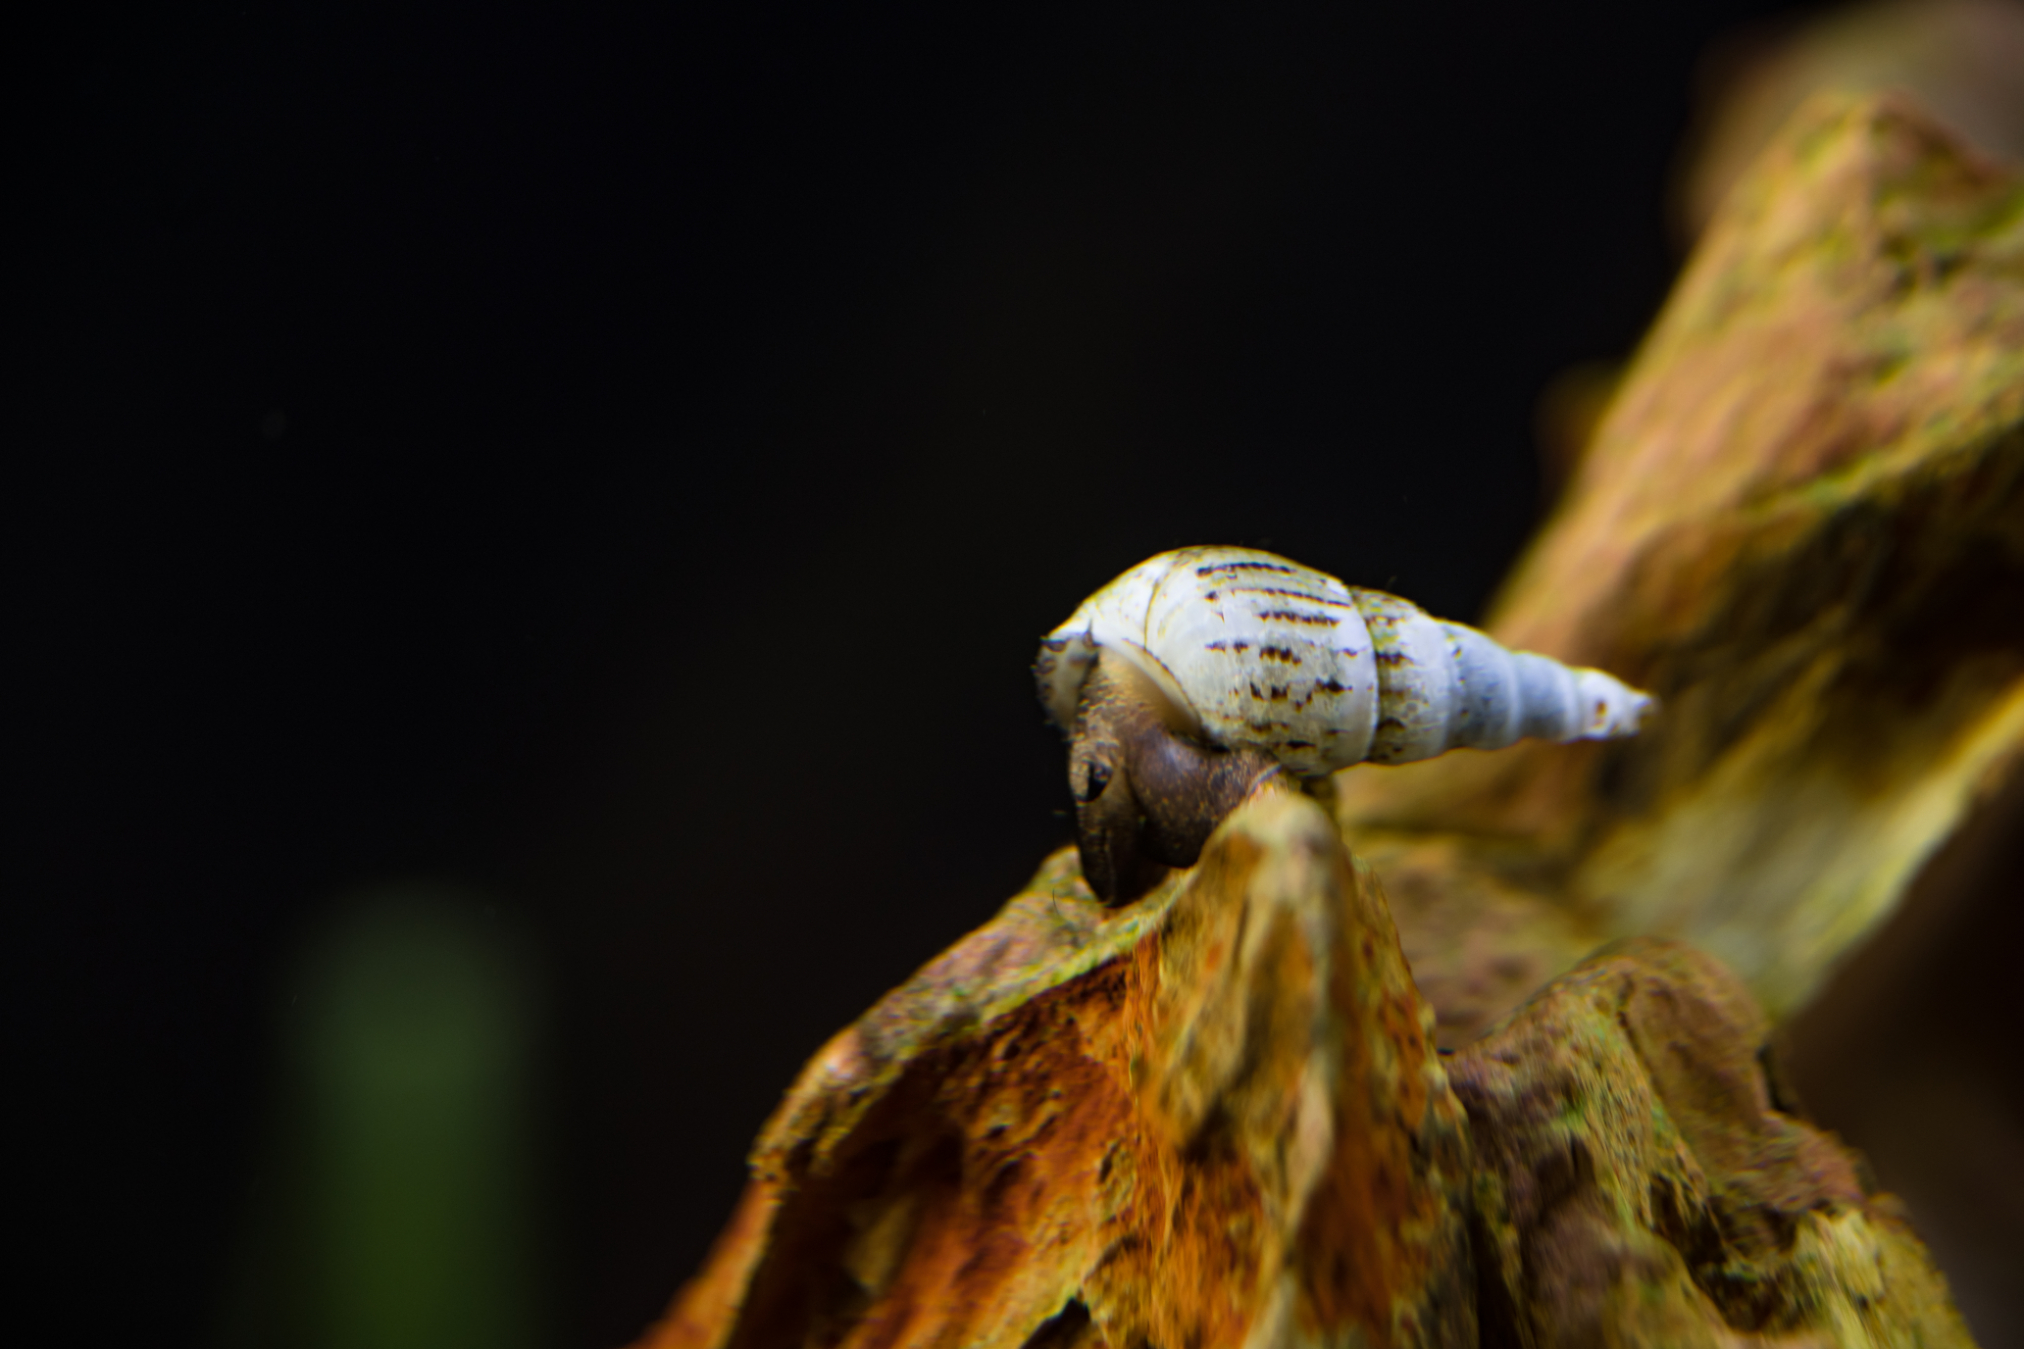 Nocturnal Trumpet Snails